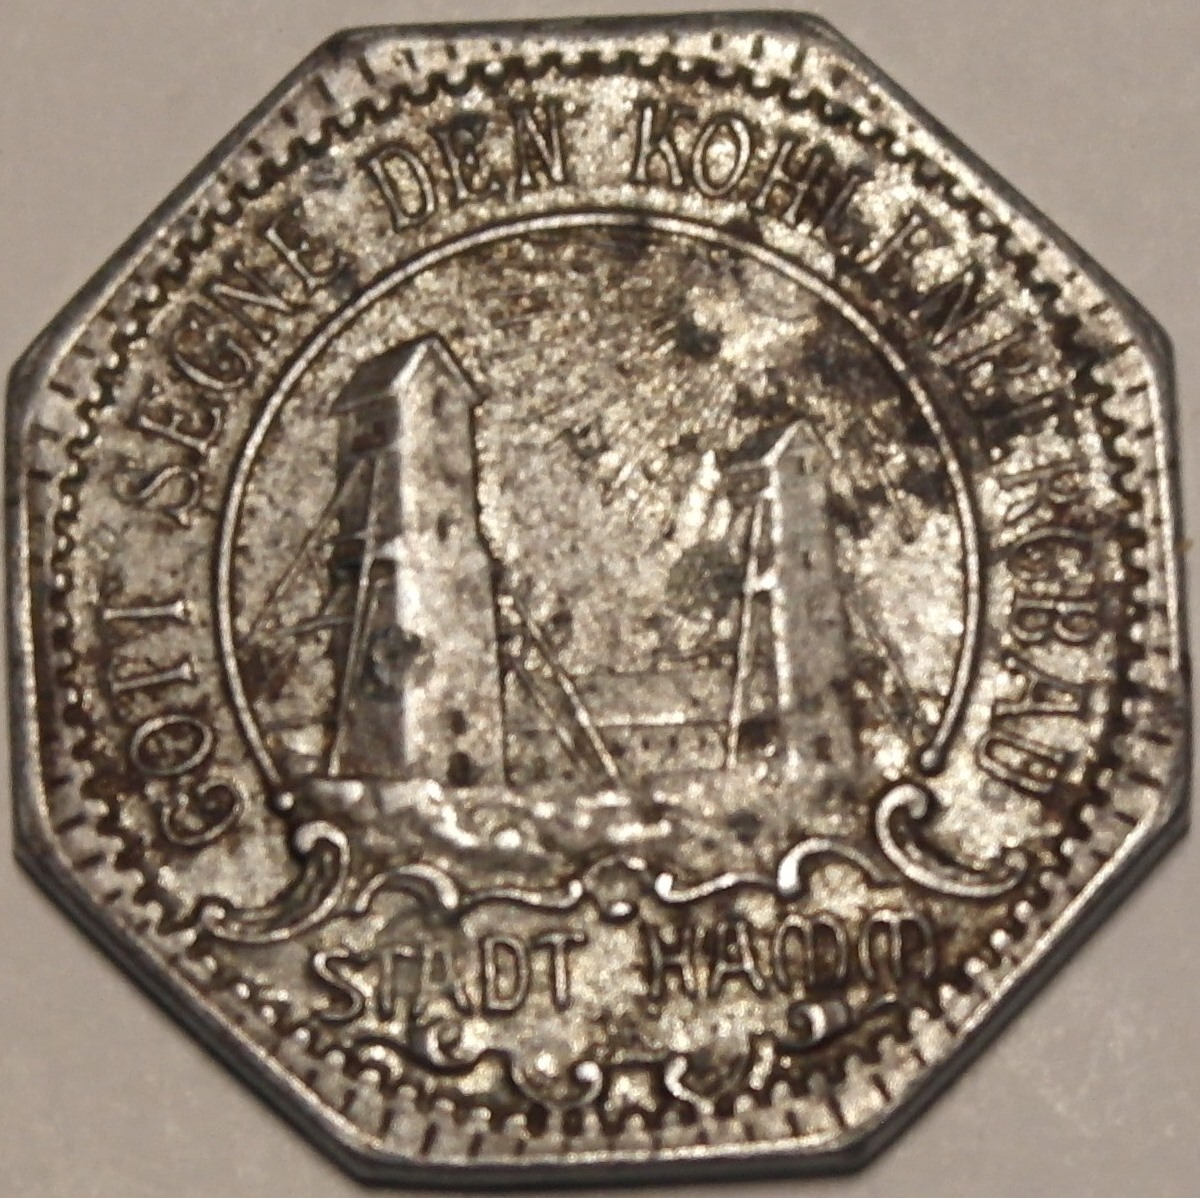 10 Pfennig Hamm 1919 b - Kopie.JPG